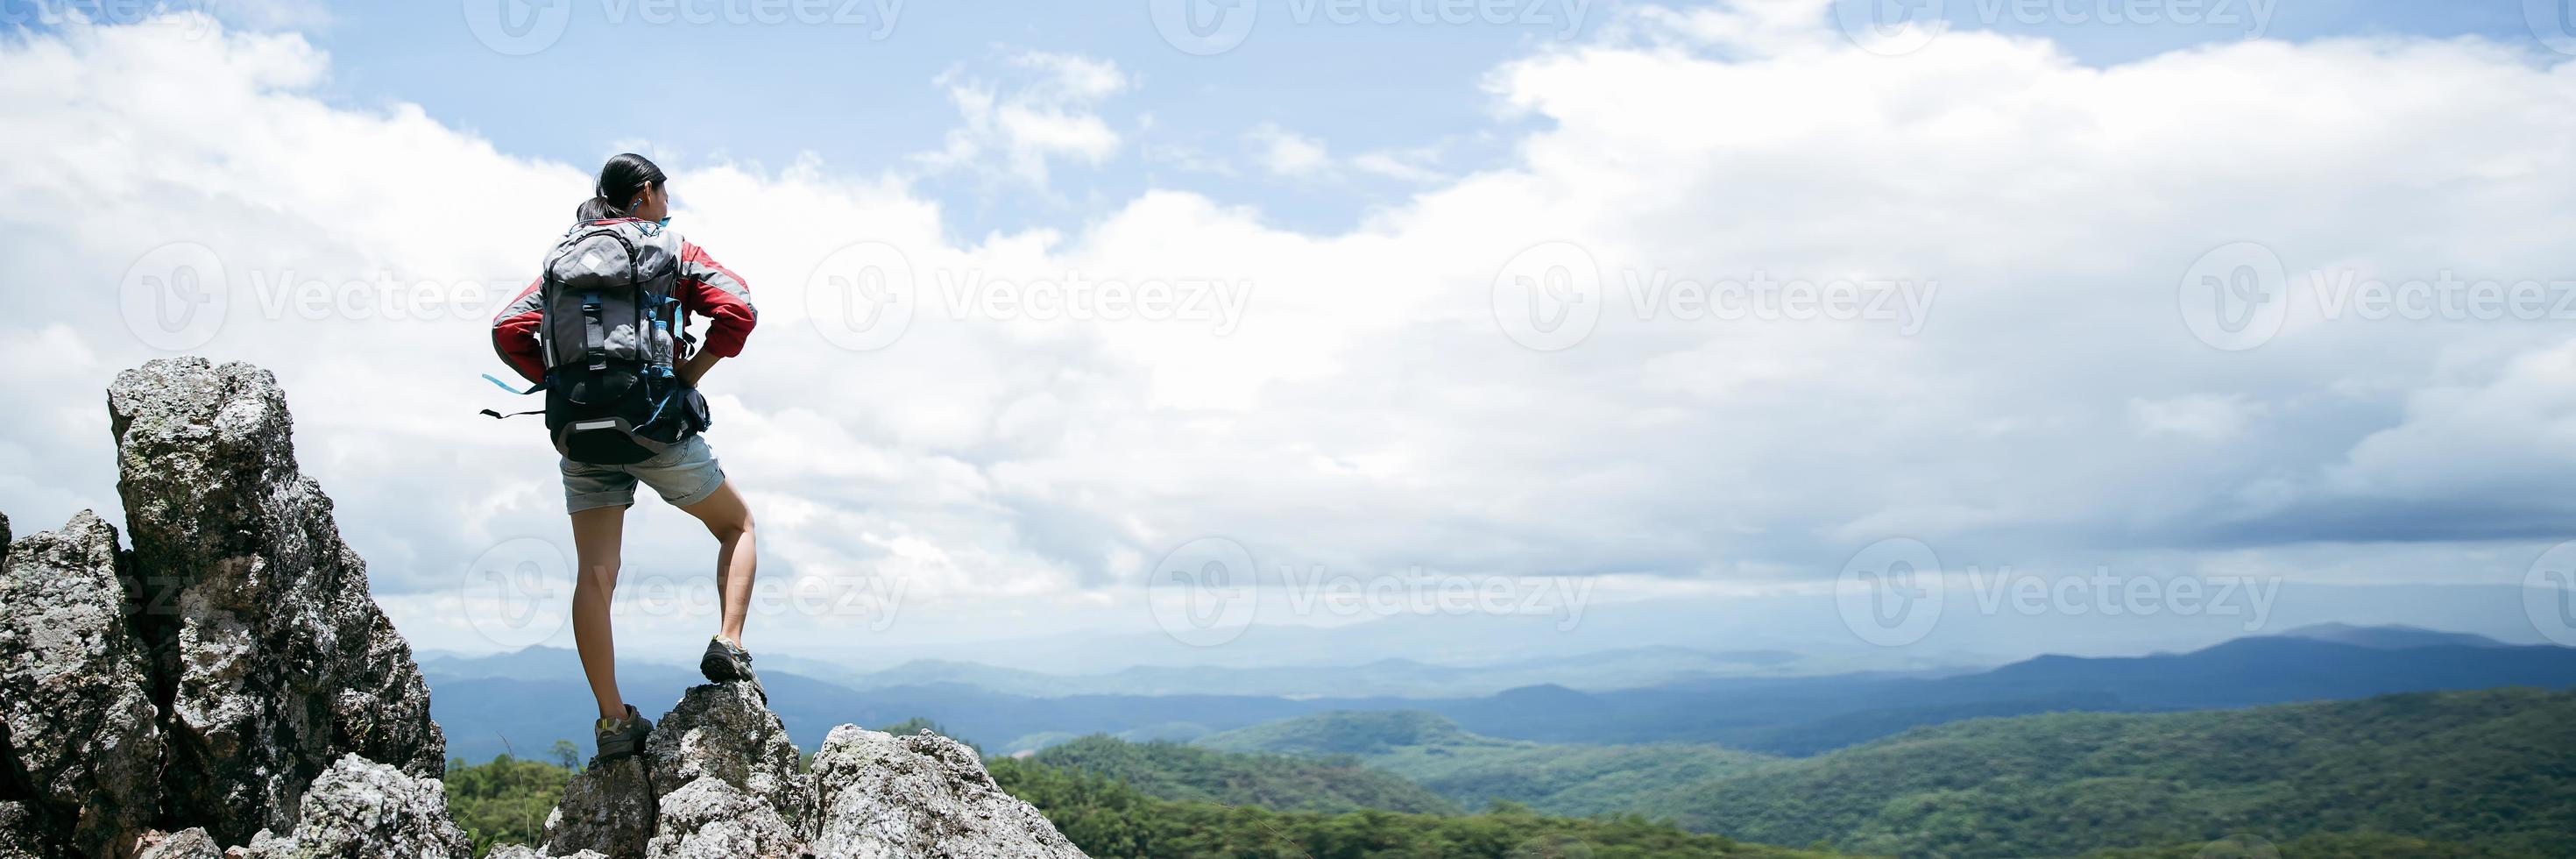 jeune personne randonnée femme debout sur le haut du rocher, femme sac à dos regardant la belle montagne en été, paysage avec fille sportive, collines panoramiques, forêt. voyage et tourisme. bannière avec espace de copie photo